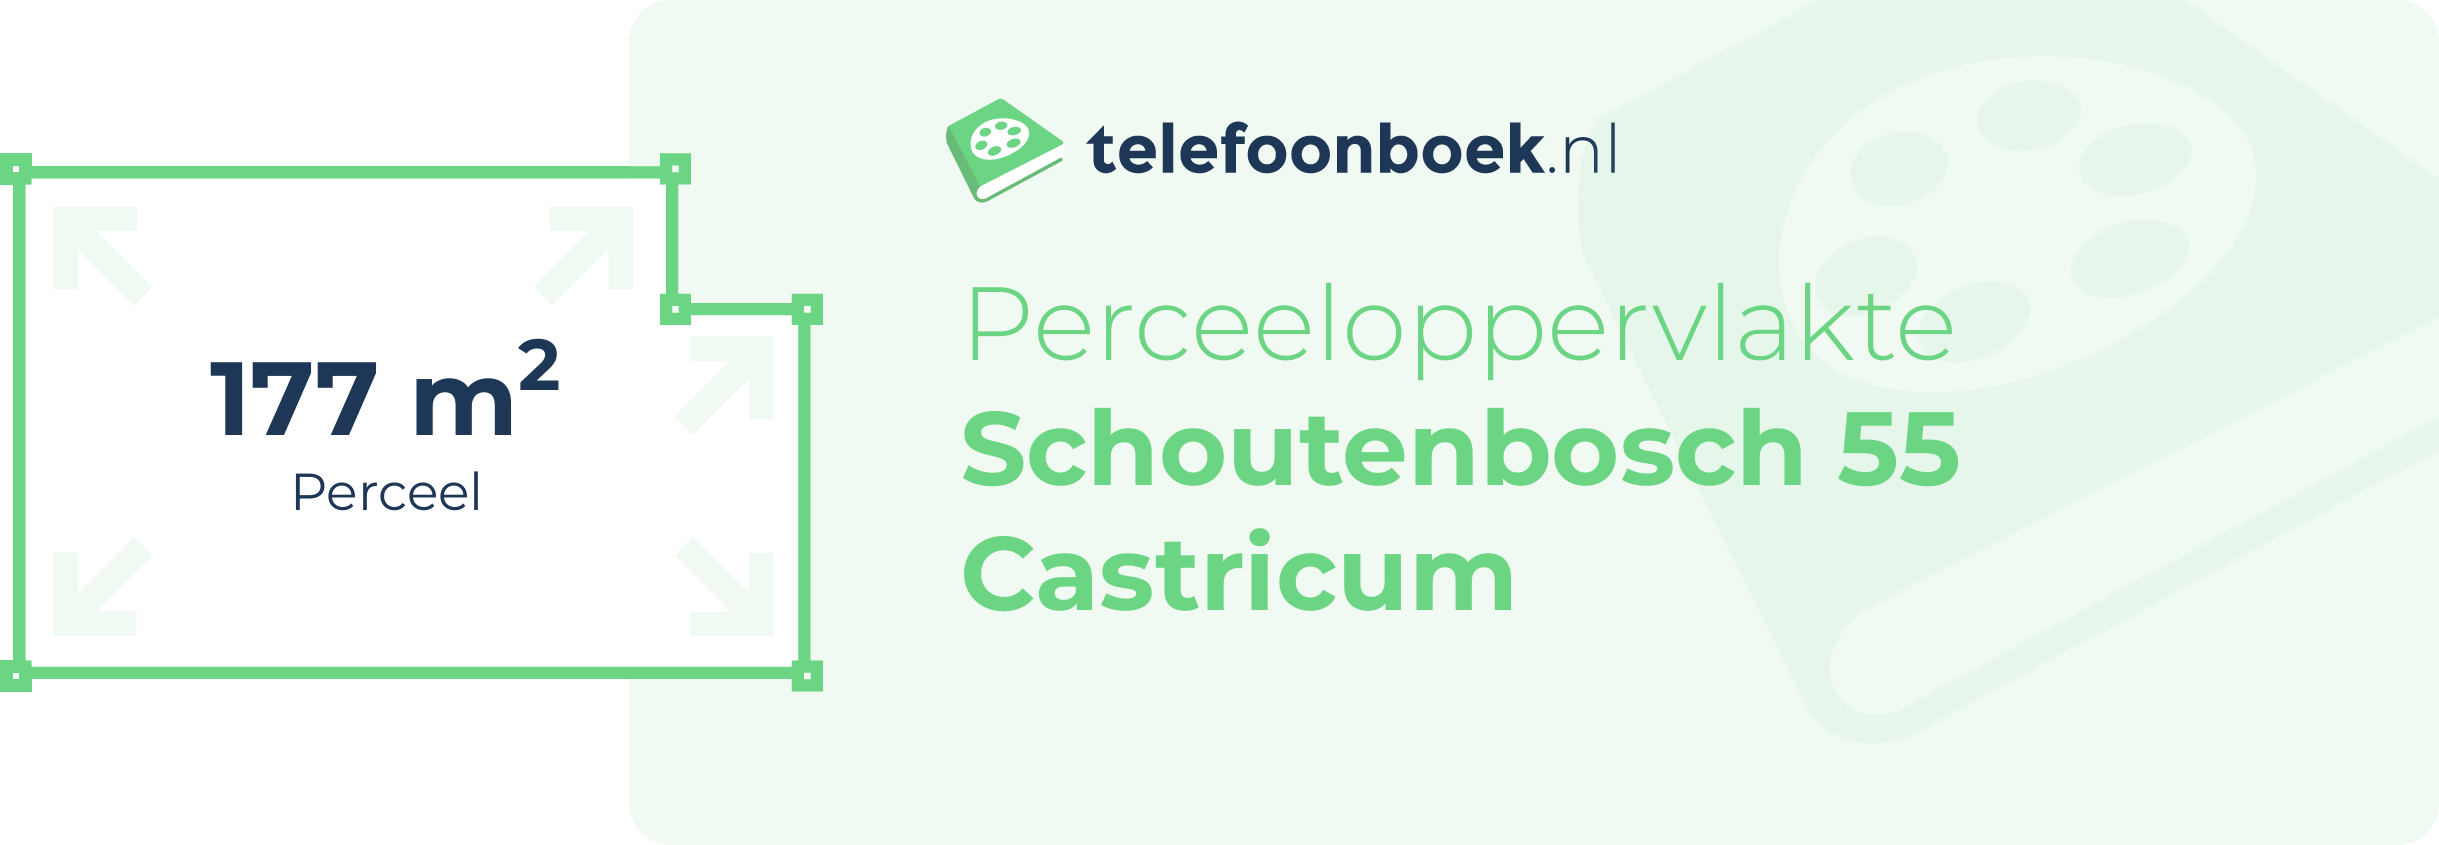 Perceeloppervlakte Schoutenbosch 55 Castricum